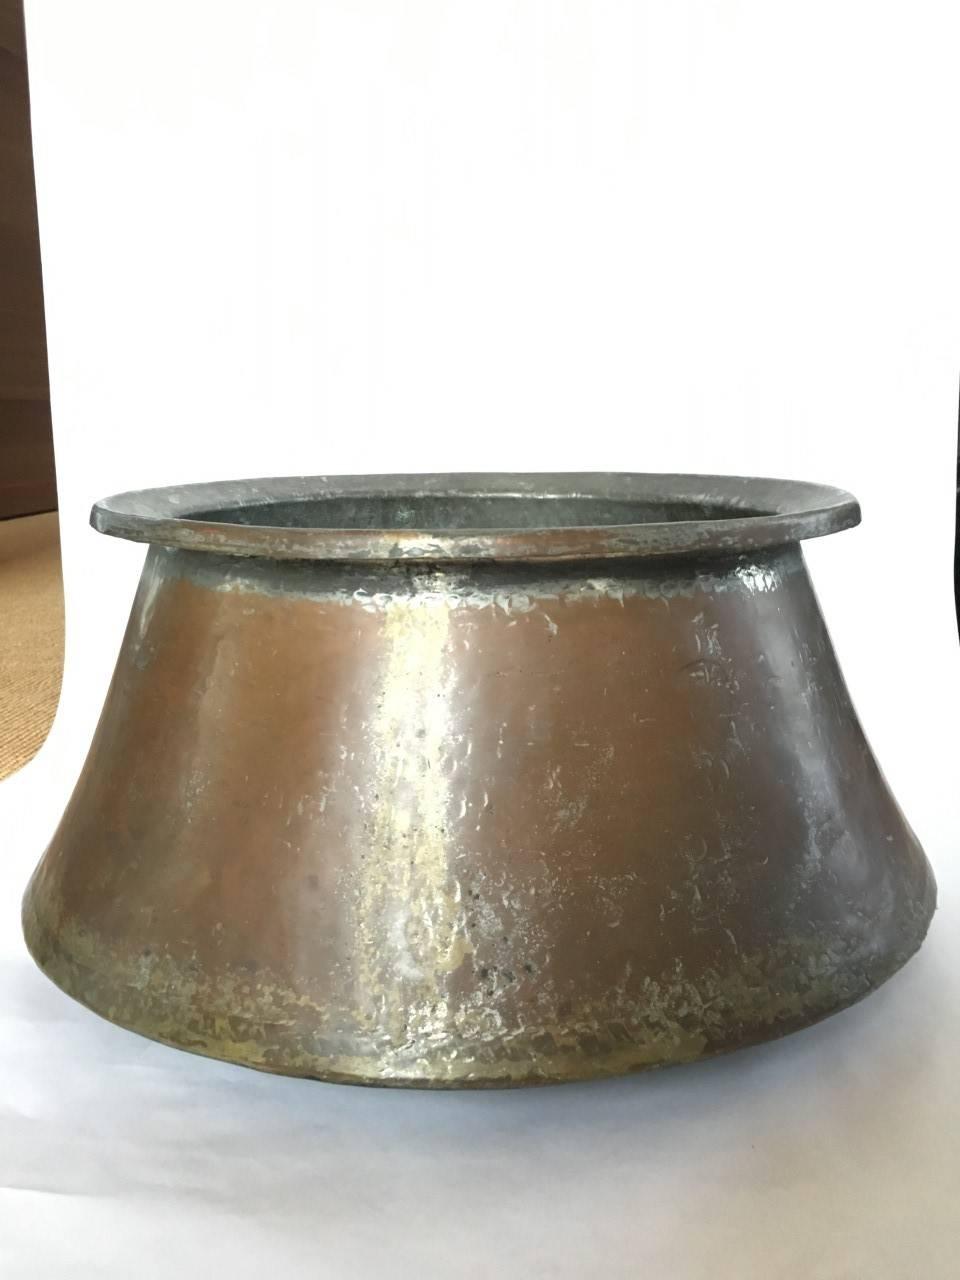 copper pots india